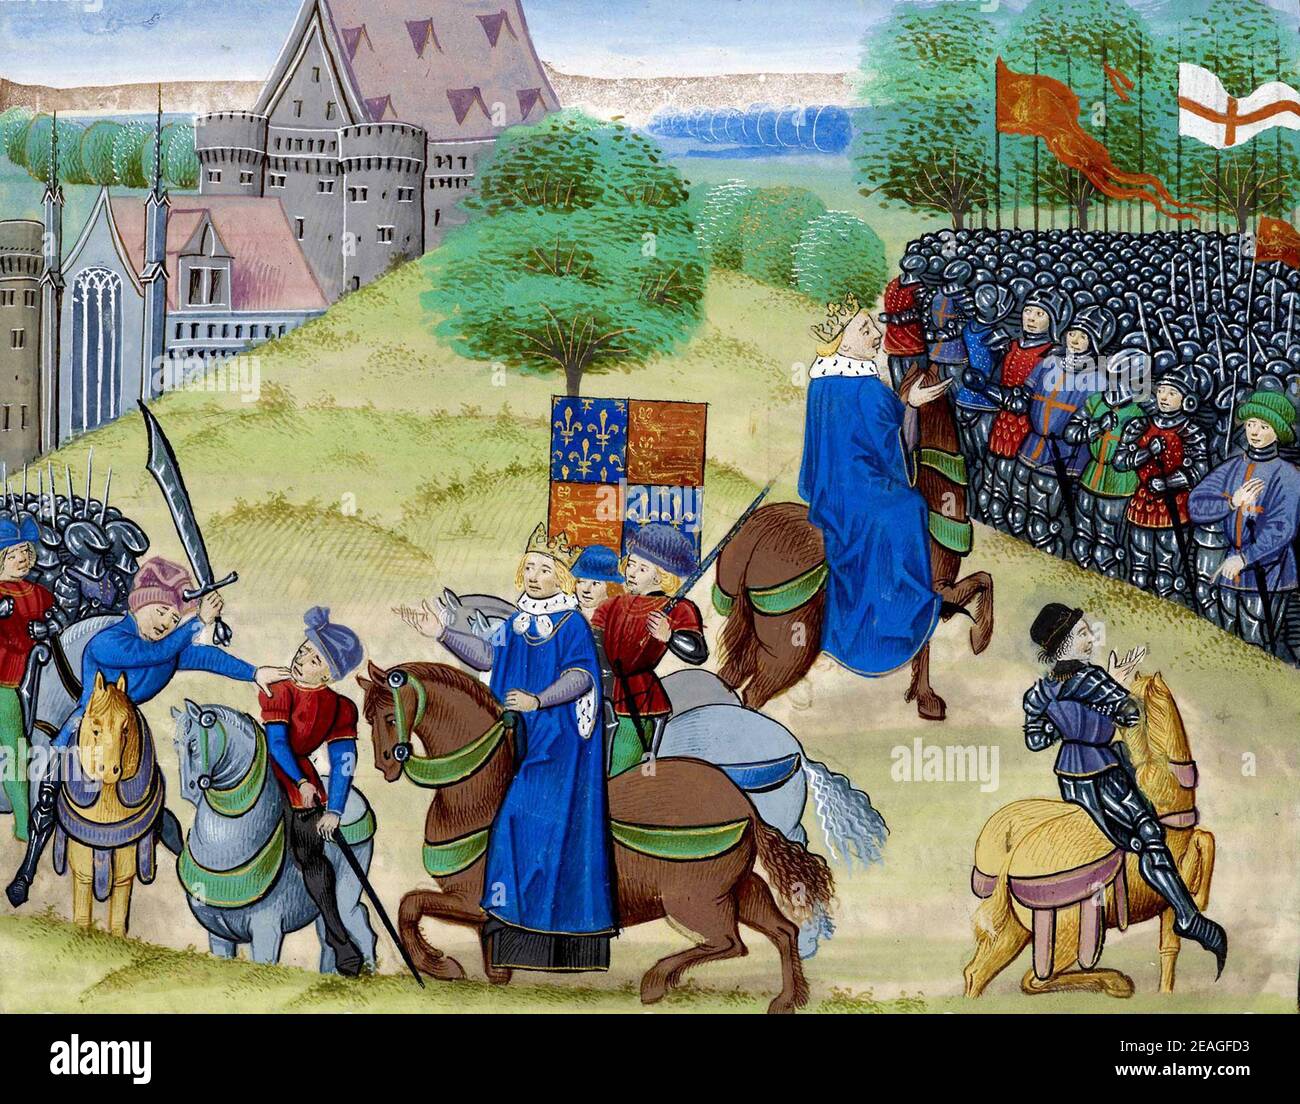 Der Tod von Wat Tyler, Walter 'Wat' Tyler (1341 – 1381) Führer des Bauernaufstandes von 1381 in England. Er marschierte eine Gruppe von Rebellen von Canterbury nach London, um sich gegen die Einführung einer Umfragesteuer zu wehren und wirtschaftliche und soziale Reformen zu fordern. Während die kurze Rebellion genossen frühen Erfolg, Tyler wurde von Offizieren loyal zu König Richard II während der Verhandlungen in Smithfield, London getötet. Stockfoto